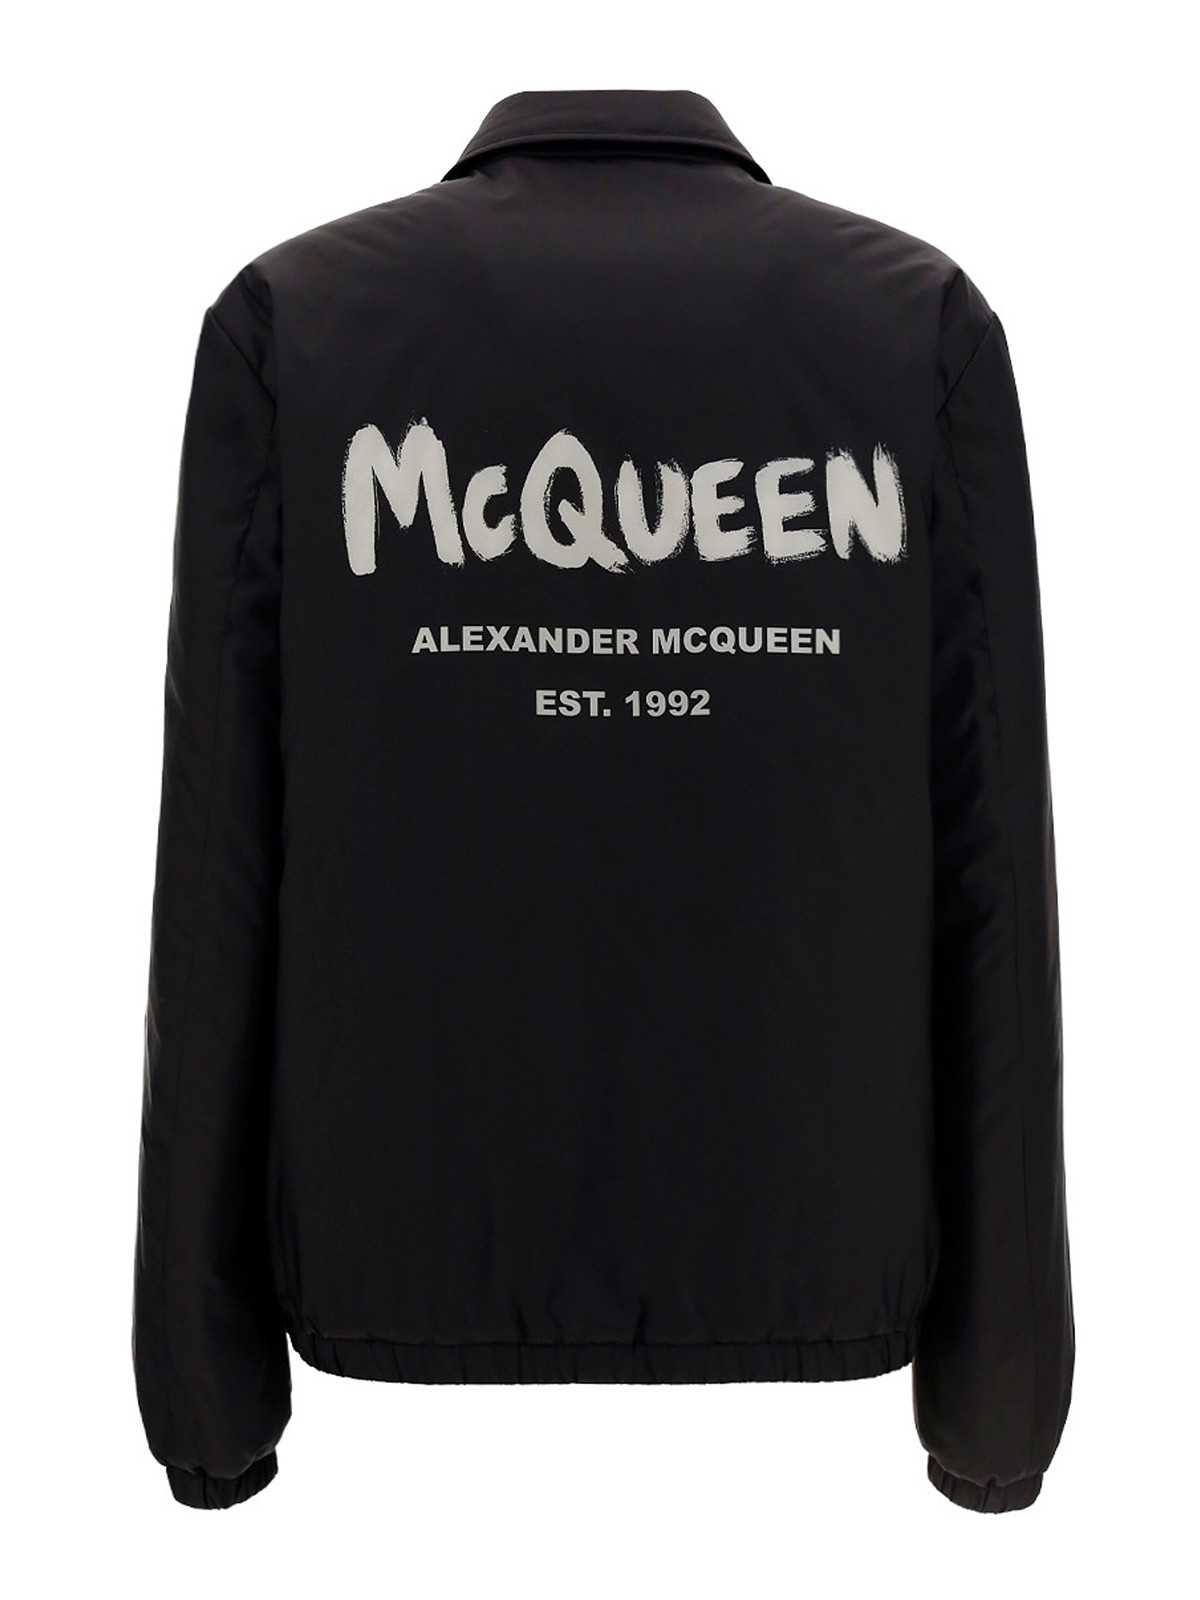 Alexander Mcqueen - カジュアルジャケット - 黒 - カジュアルジャケット - 662323QRR601080